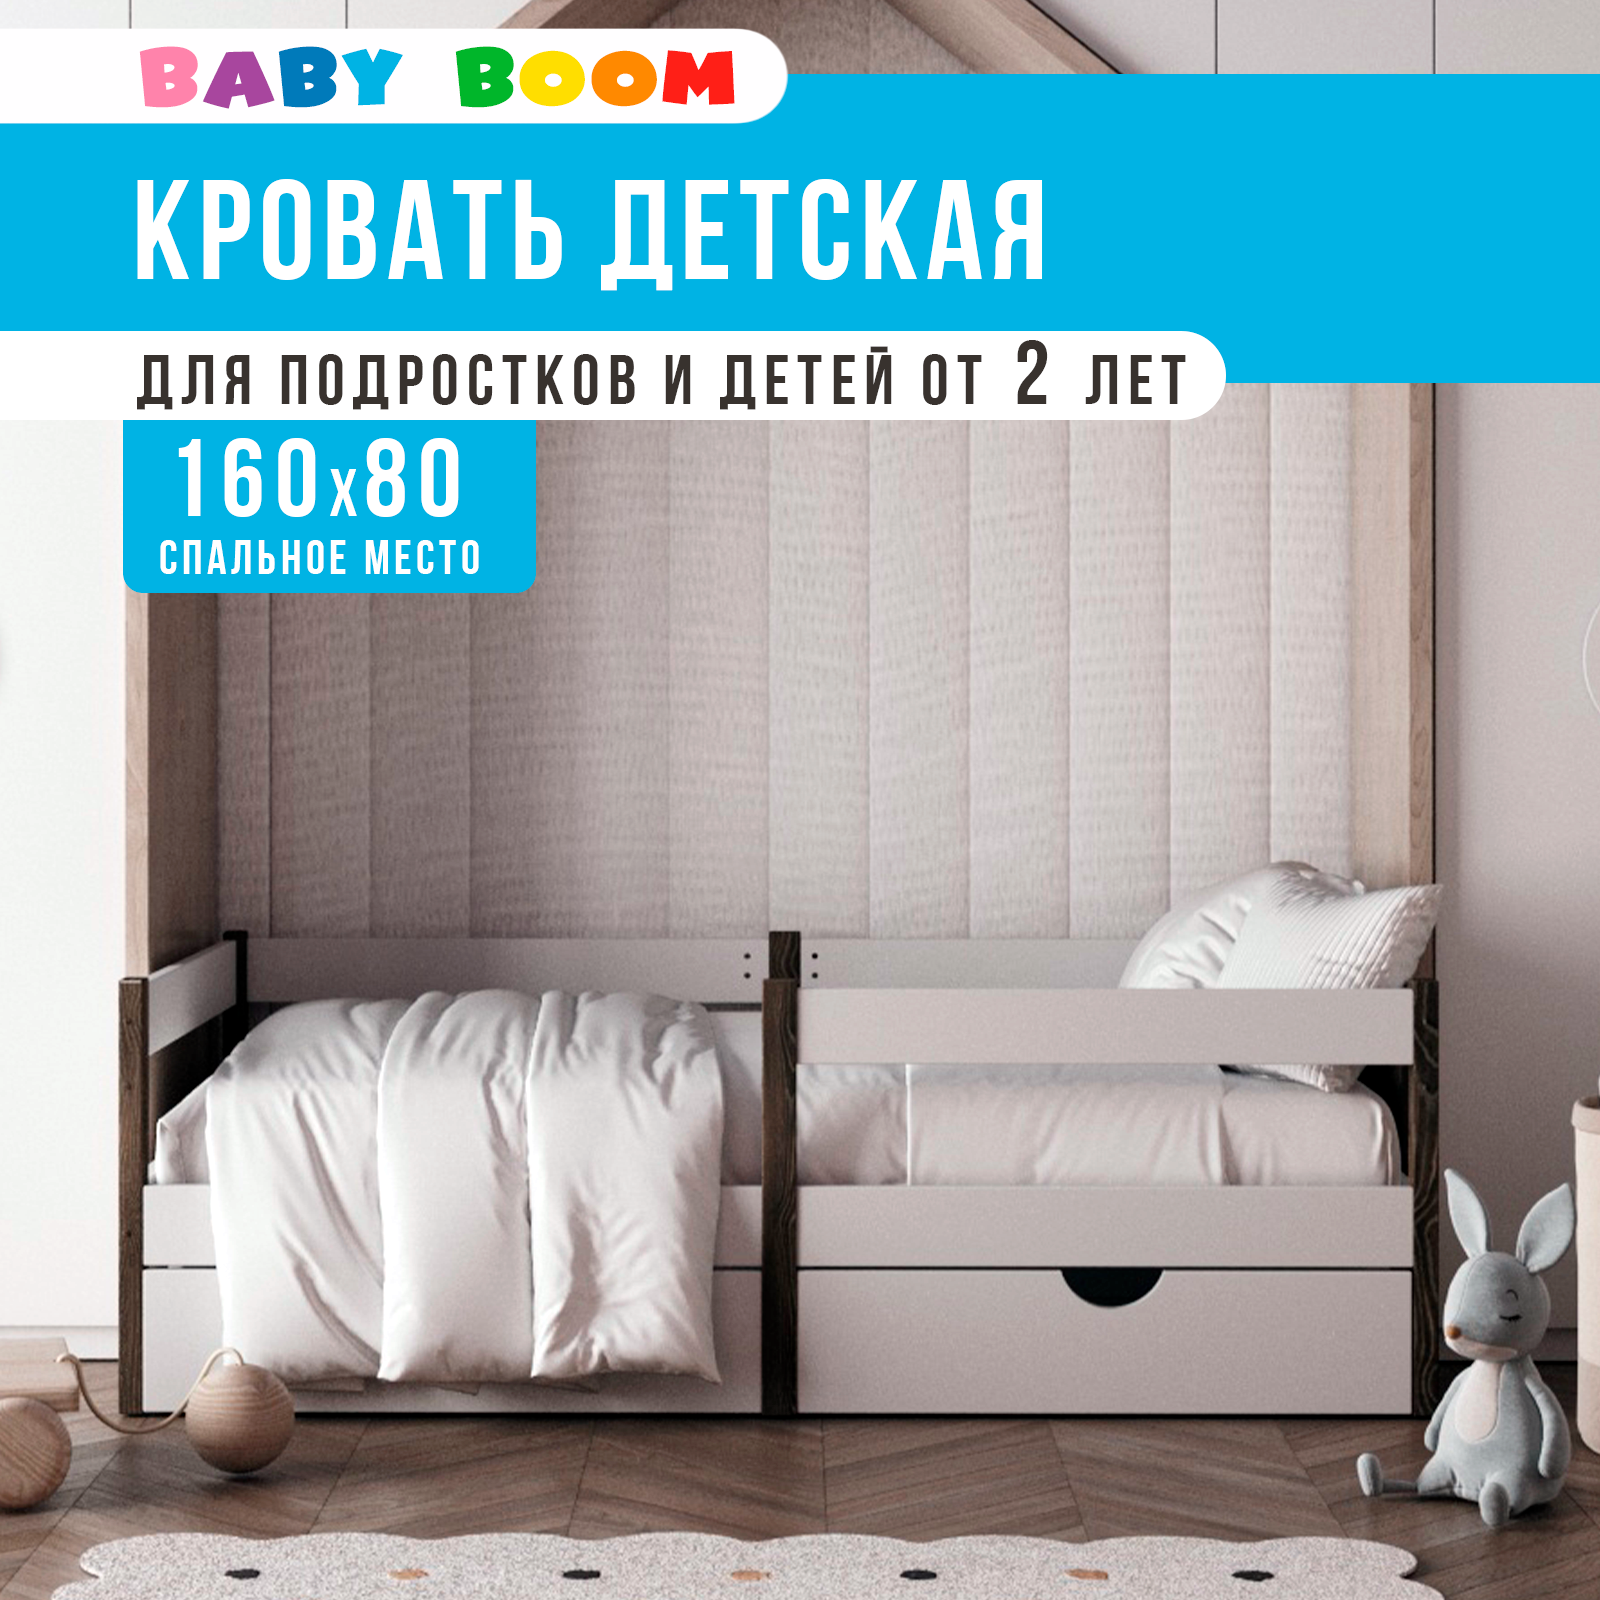 Детская кровать BabyBoom 160x80 c бортиком – купить в Москве, цены в интернет-магазинах на Мегамаркет